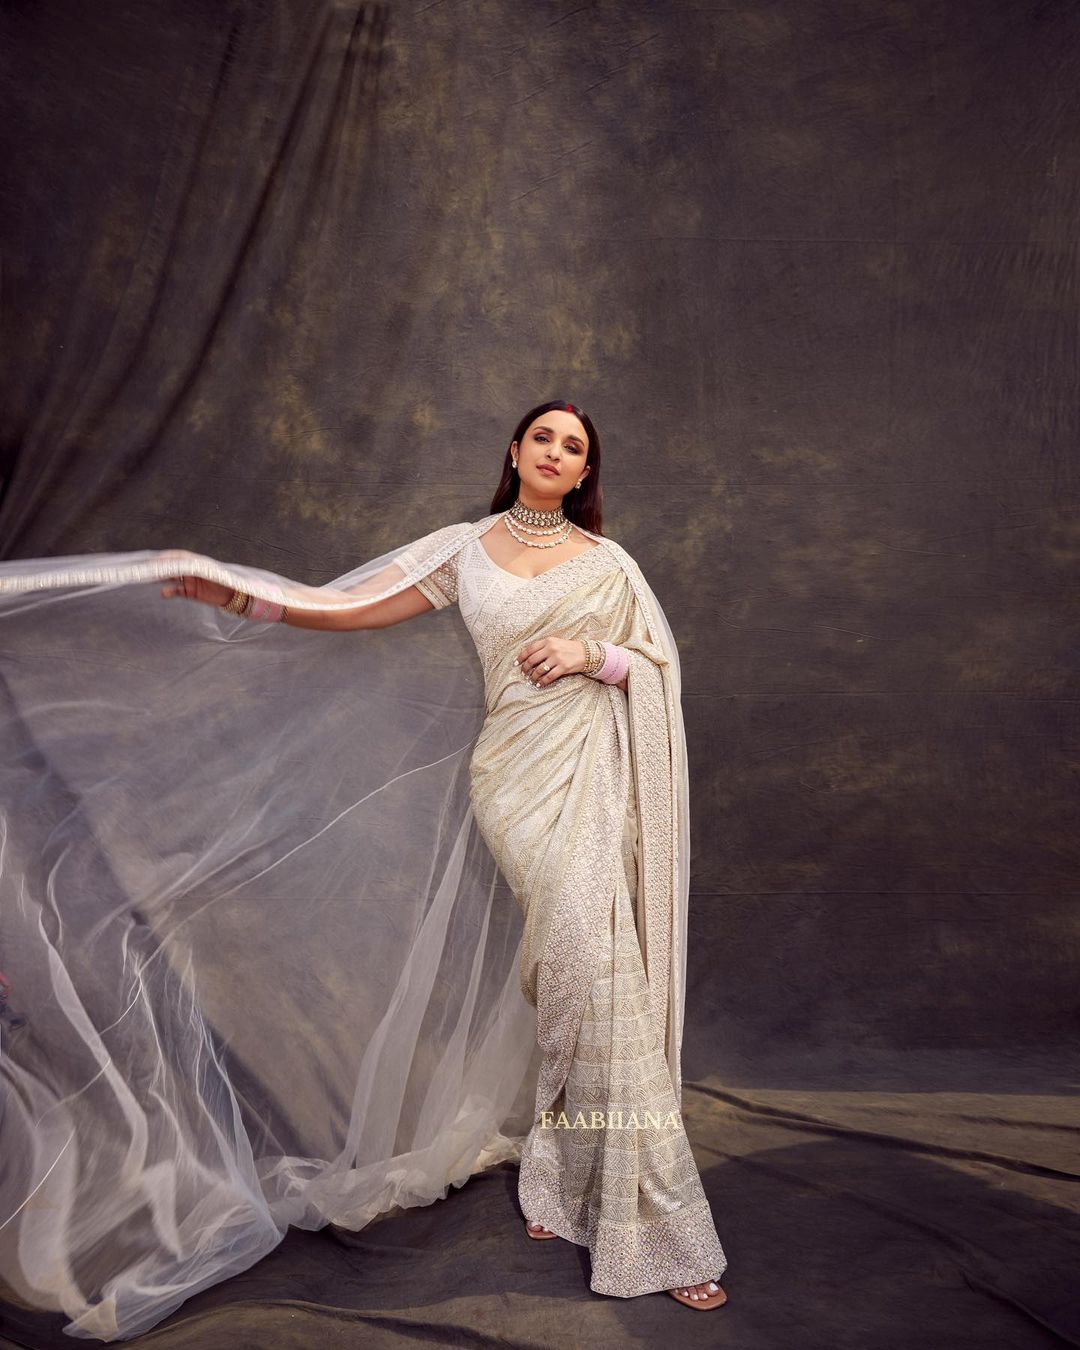 Parineeti Chopra in a white saree